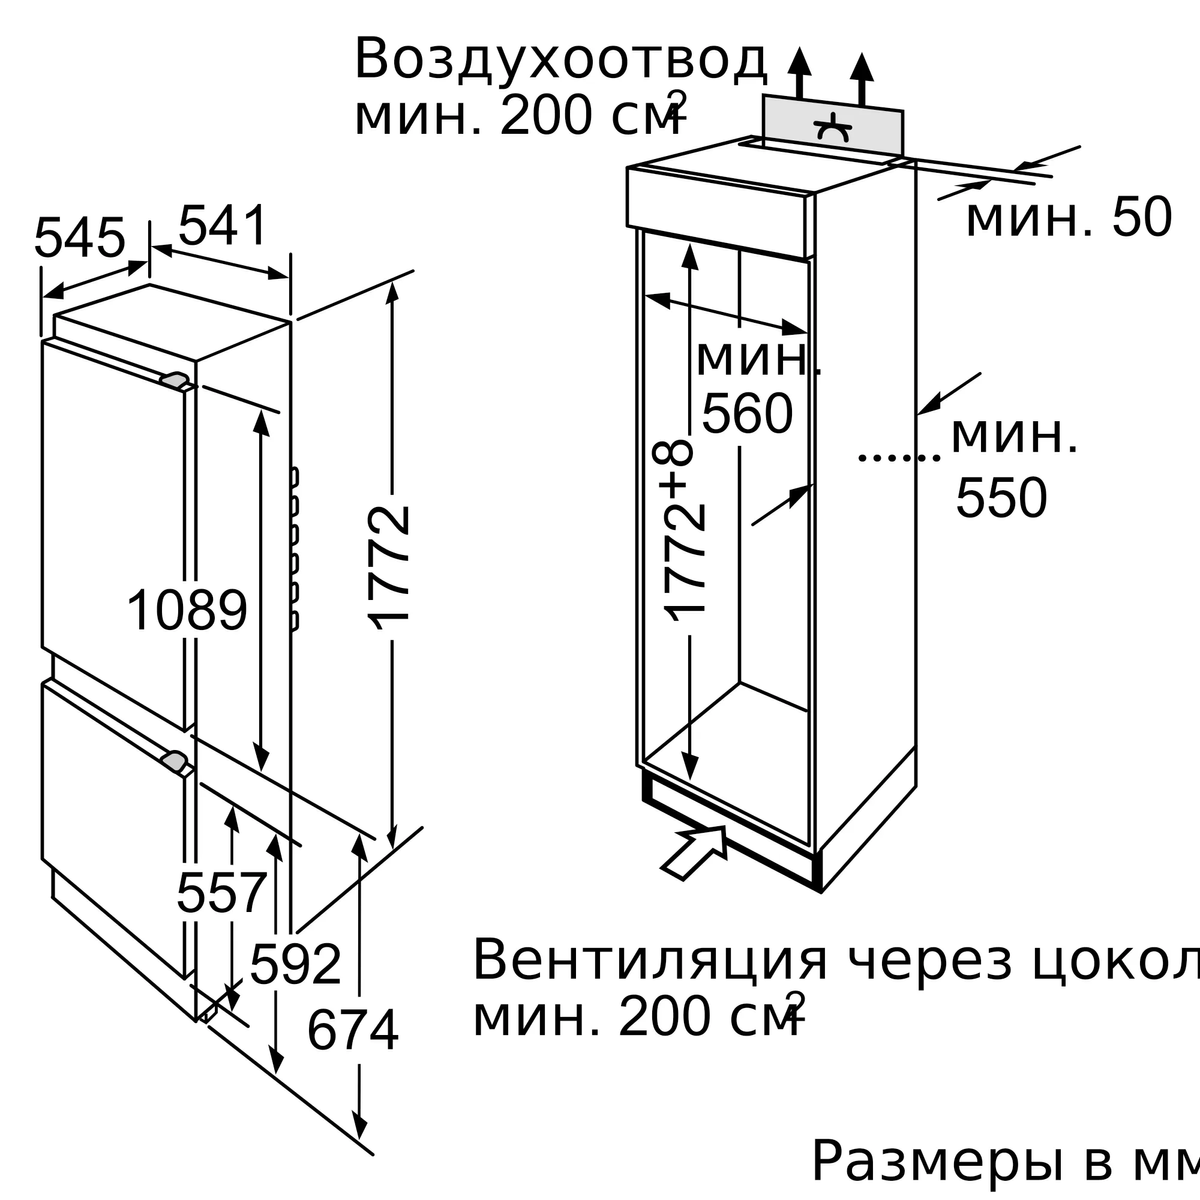 холодильник встраеваемый bosch kiv38x22ru, купить в Красноярске холодильник встраеваемый bosch kiv38x22ru,  купить в Красноярске дешево холодильник встраеваемый bosch kiv38x22ru, купить в Красноярске минимальной цене холодильник встраеваемый bosch kiv38x22ru